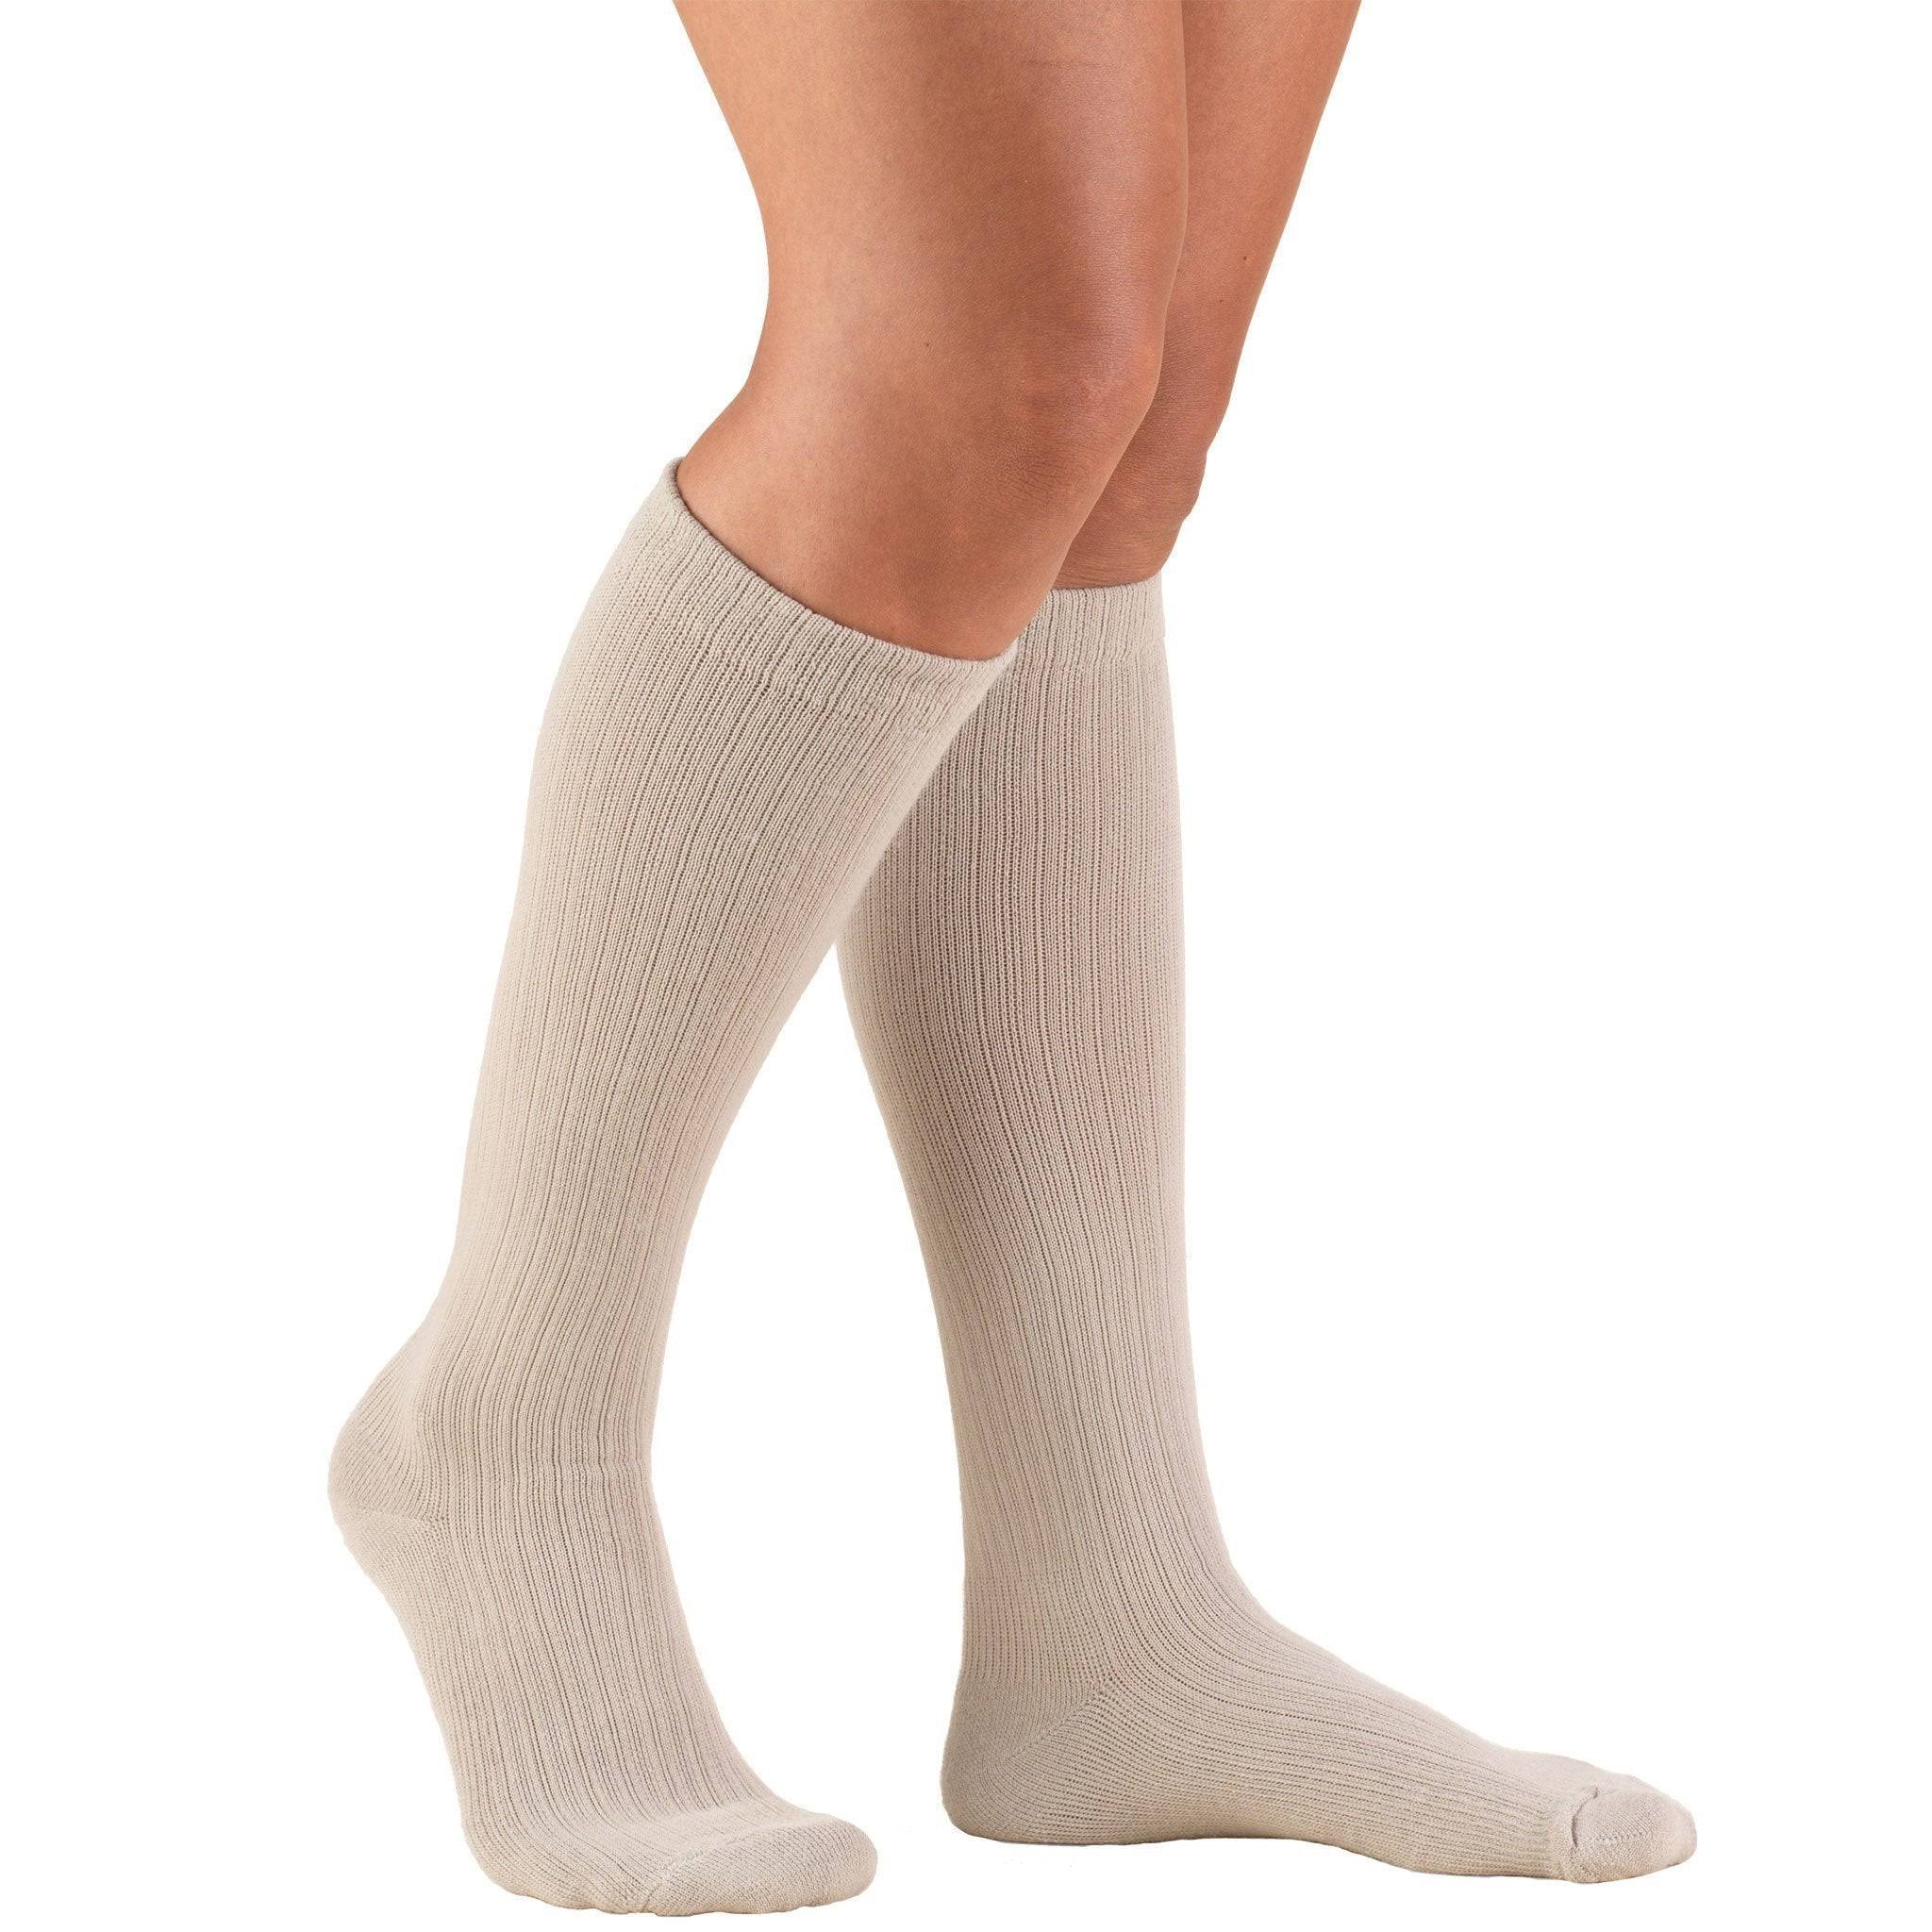 Truform Women's Compression Socks - Tan, Medium